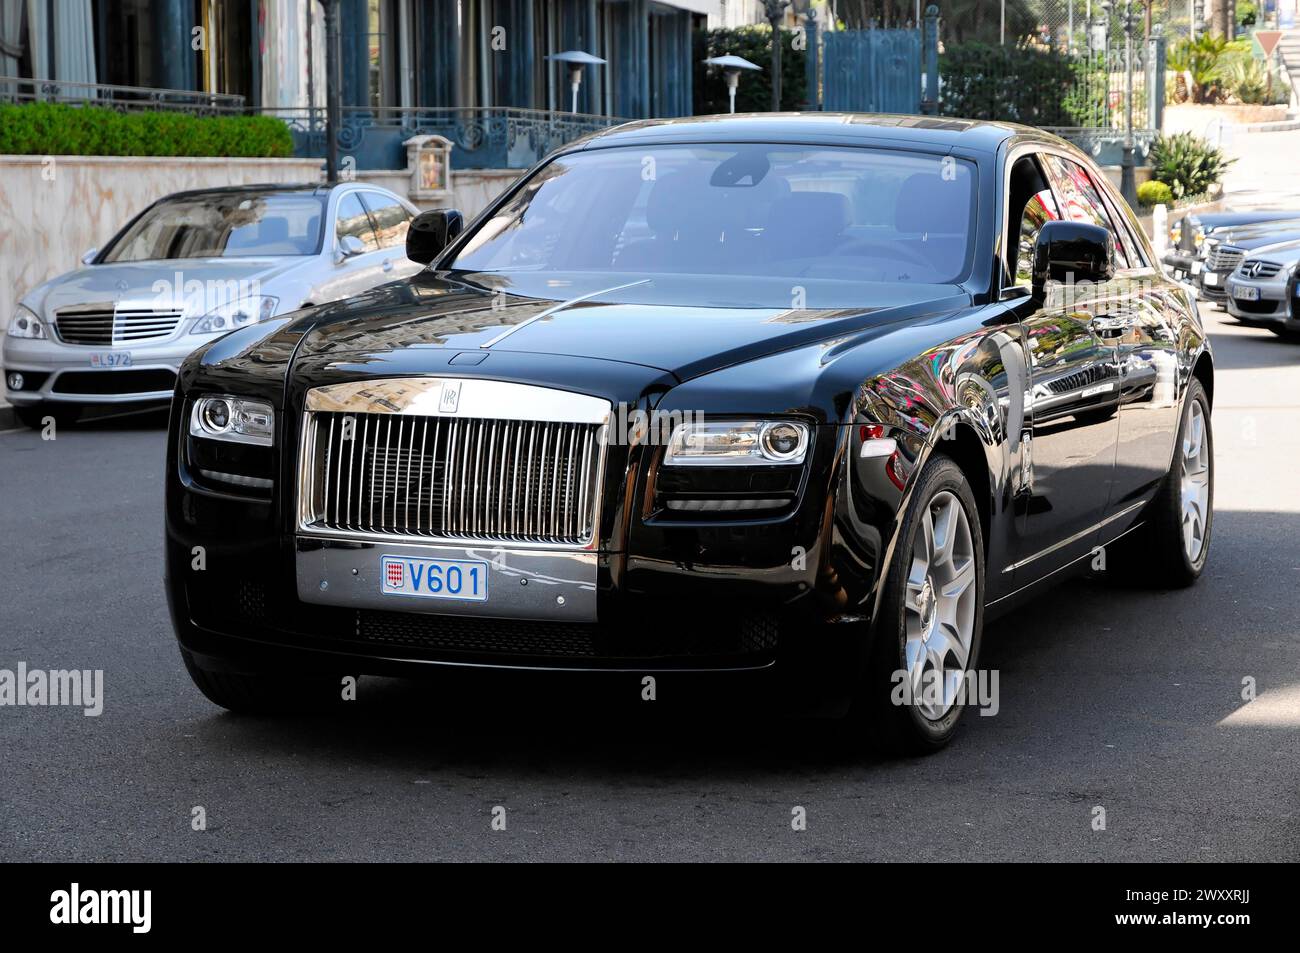 Rolls Royce Ghost au casino, Monte Carlo, Une Rolls-Royce noire conduisant sur la route par temps ensoleillé, Monte Carlo, Principauté de Monaco, Monaco Banque D'Images